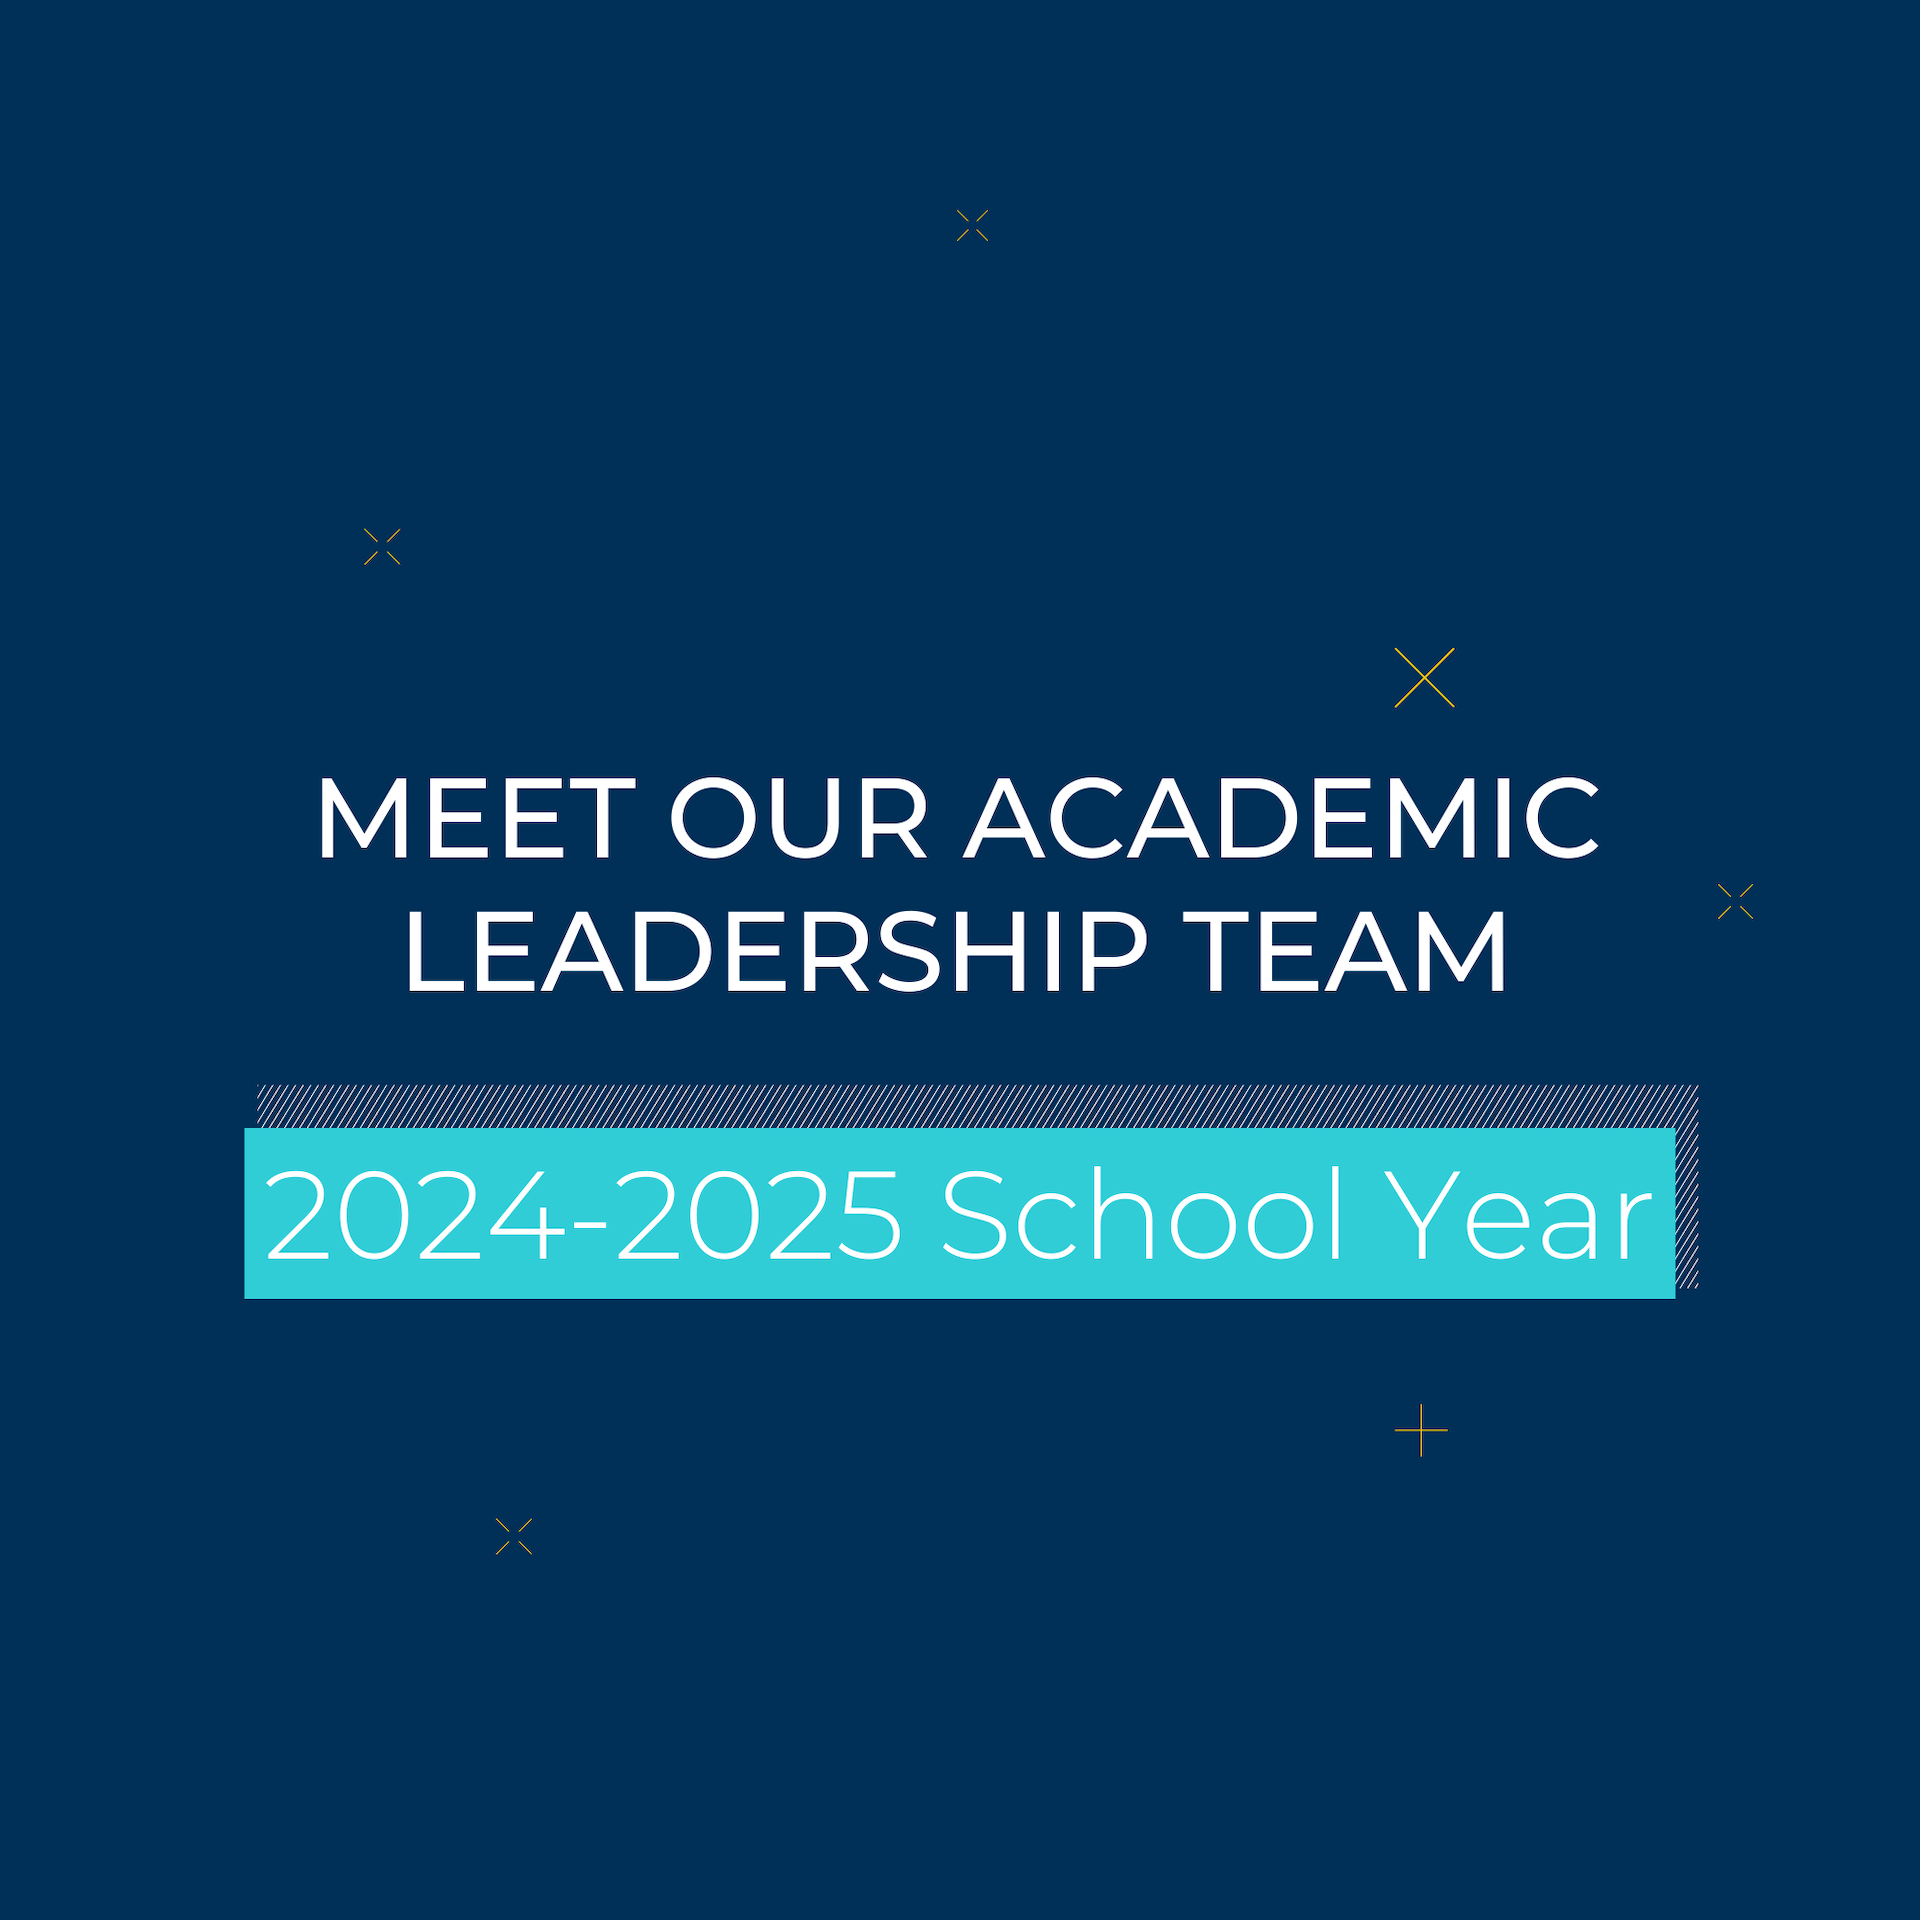 乐盟2024-2025学年教学领导团队介绍 - Meet Our Academic Leadership Team in 2024-2025 School Year